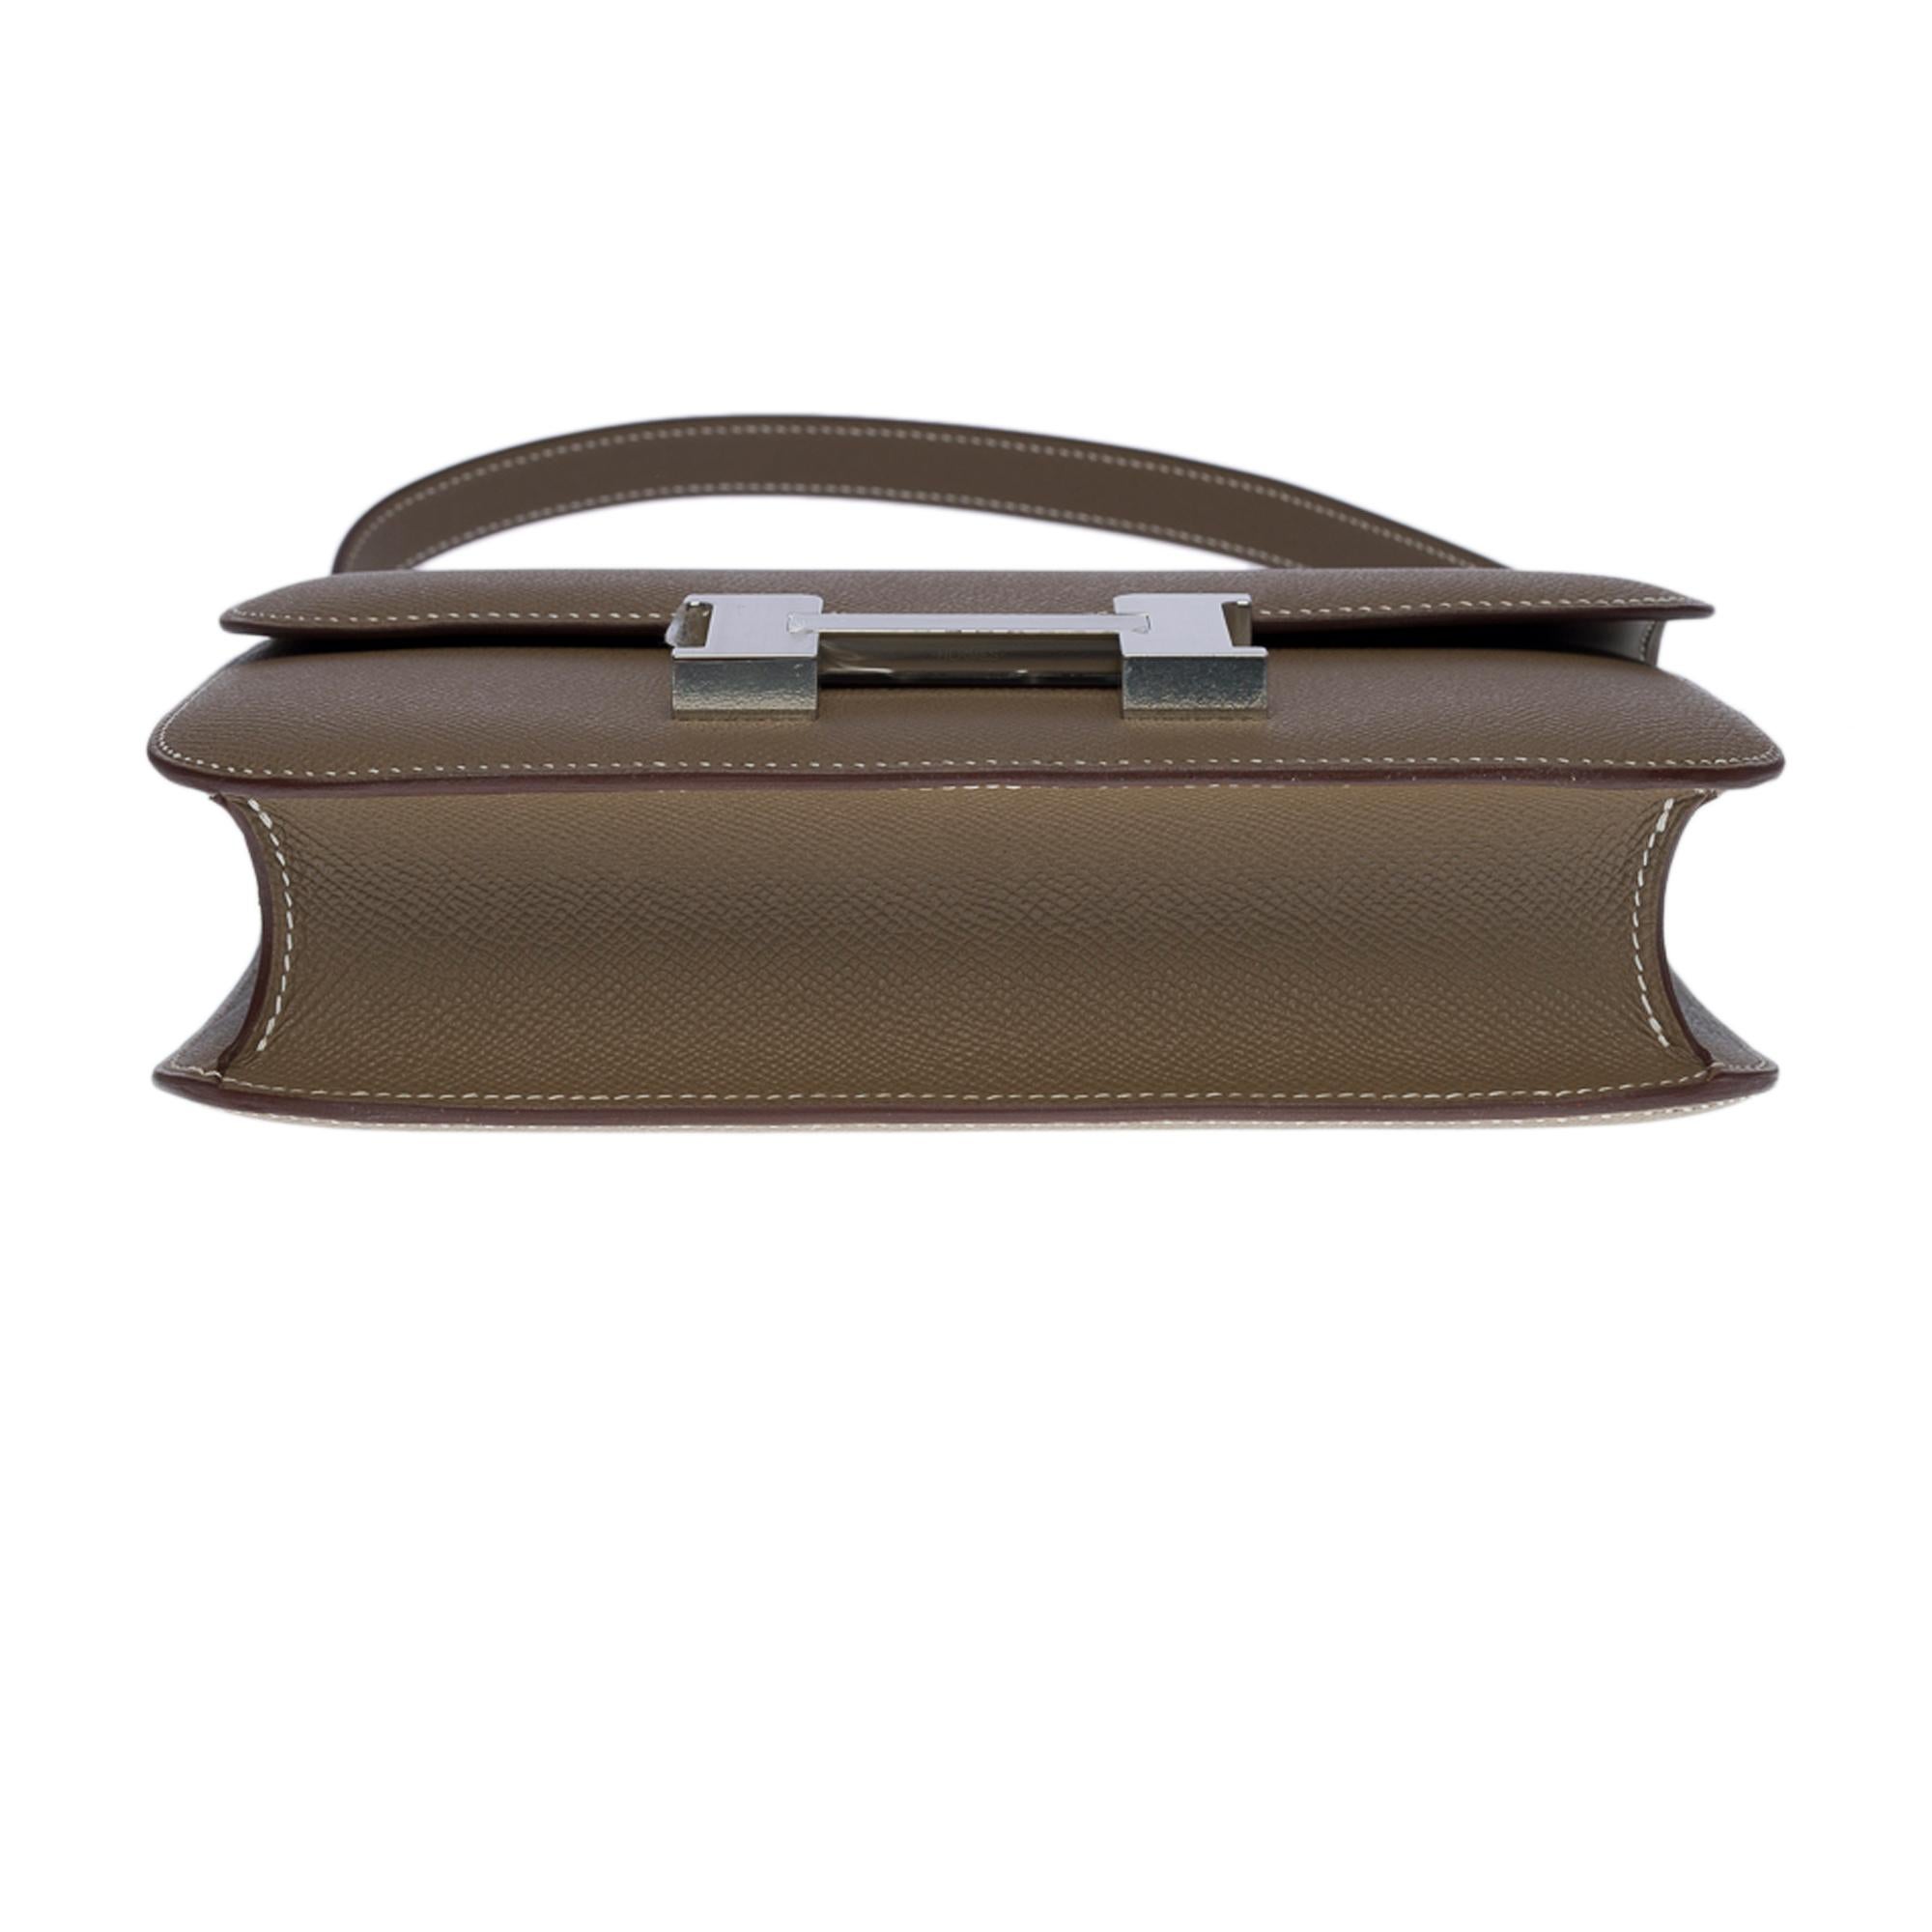 Brand New Hermès Constance 24 shoulder bag in etoupe Epsom leather, SHW 3